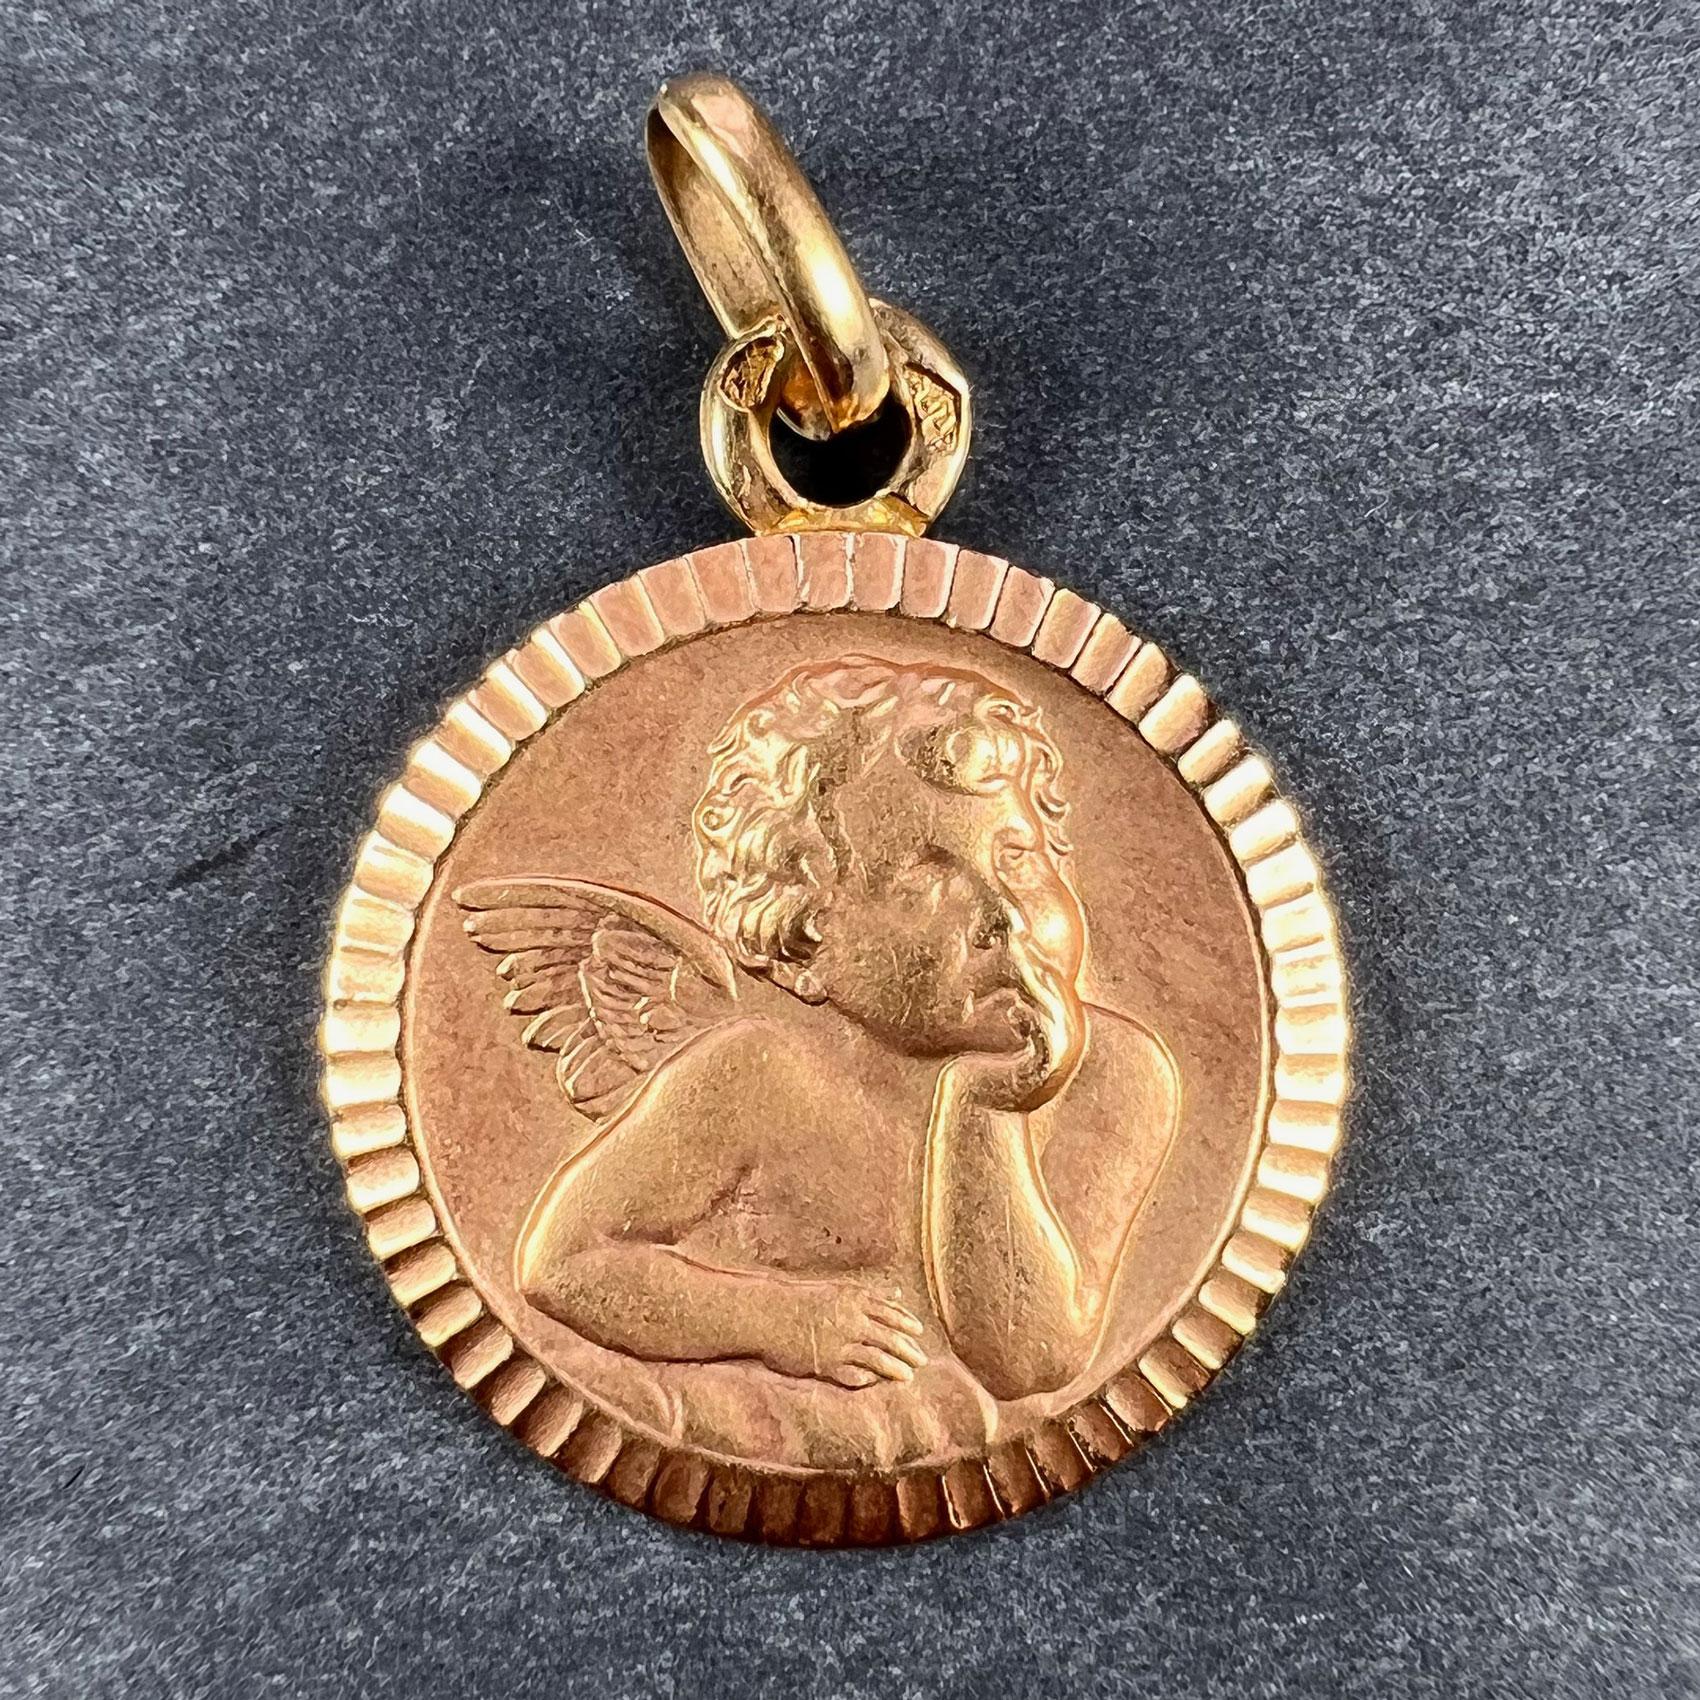 Un pendentif de charme français en or rose 18 carats (18K) conçu comme une médaille représentant l'angelot de Rafael dans un cadre strié. Estampillée de la marque de l'aigle pour l'or 18 carats et de fabrication française avec une marque de